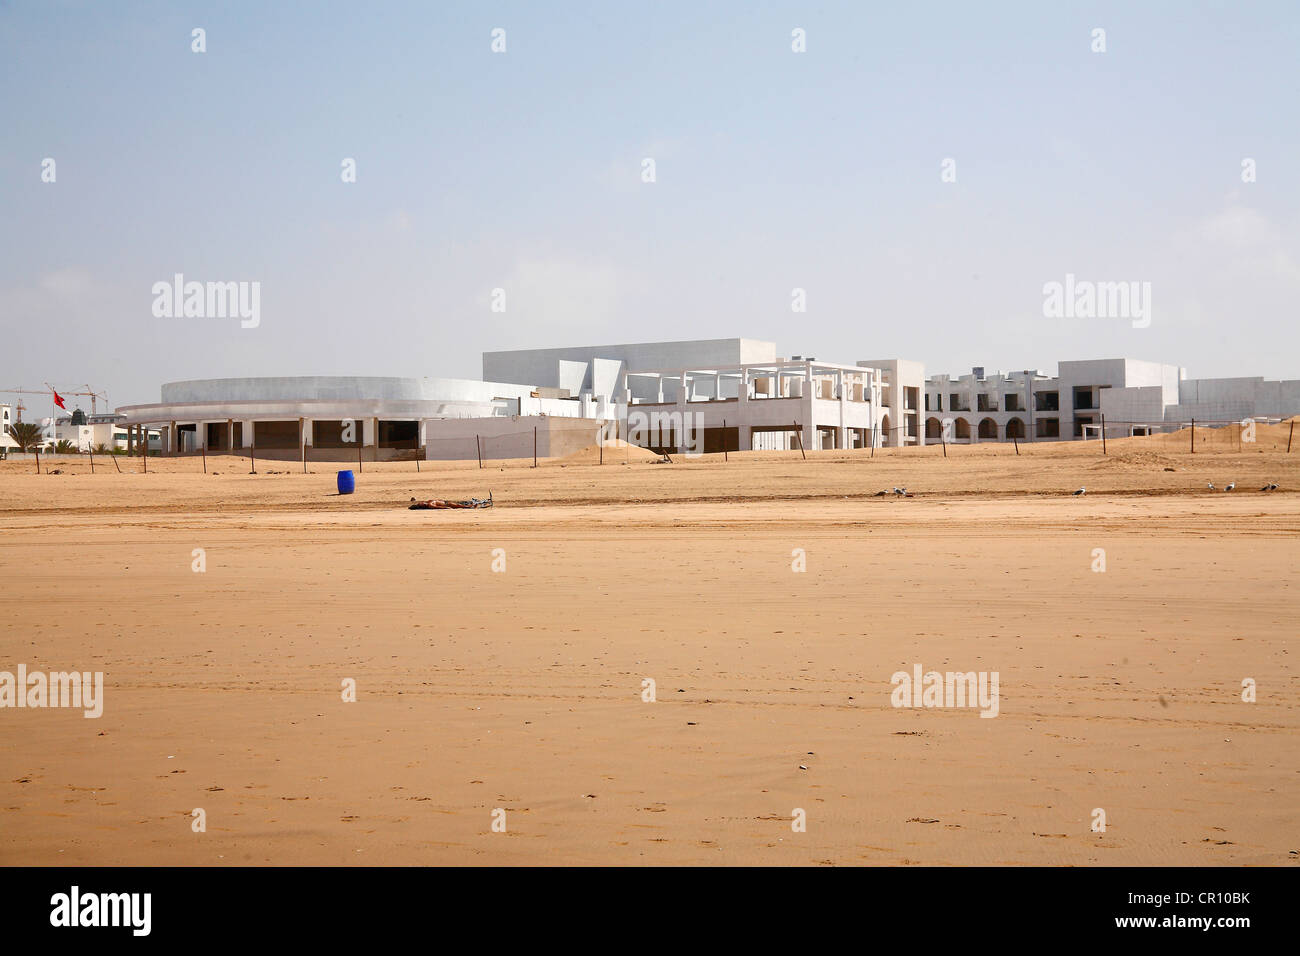 Hotel buildings on the beach, Agadir, Morocco, Africa Stock Photo